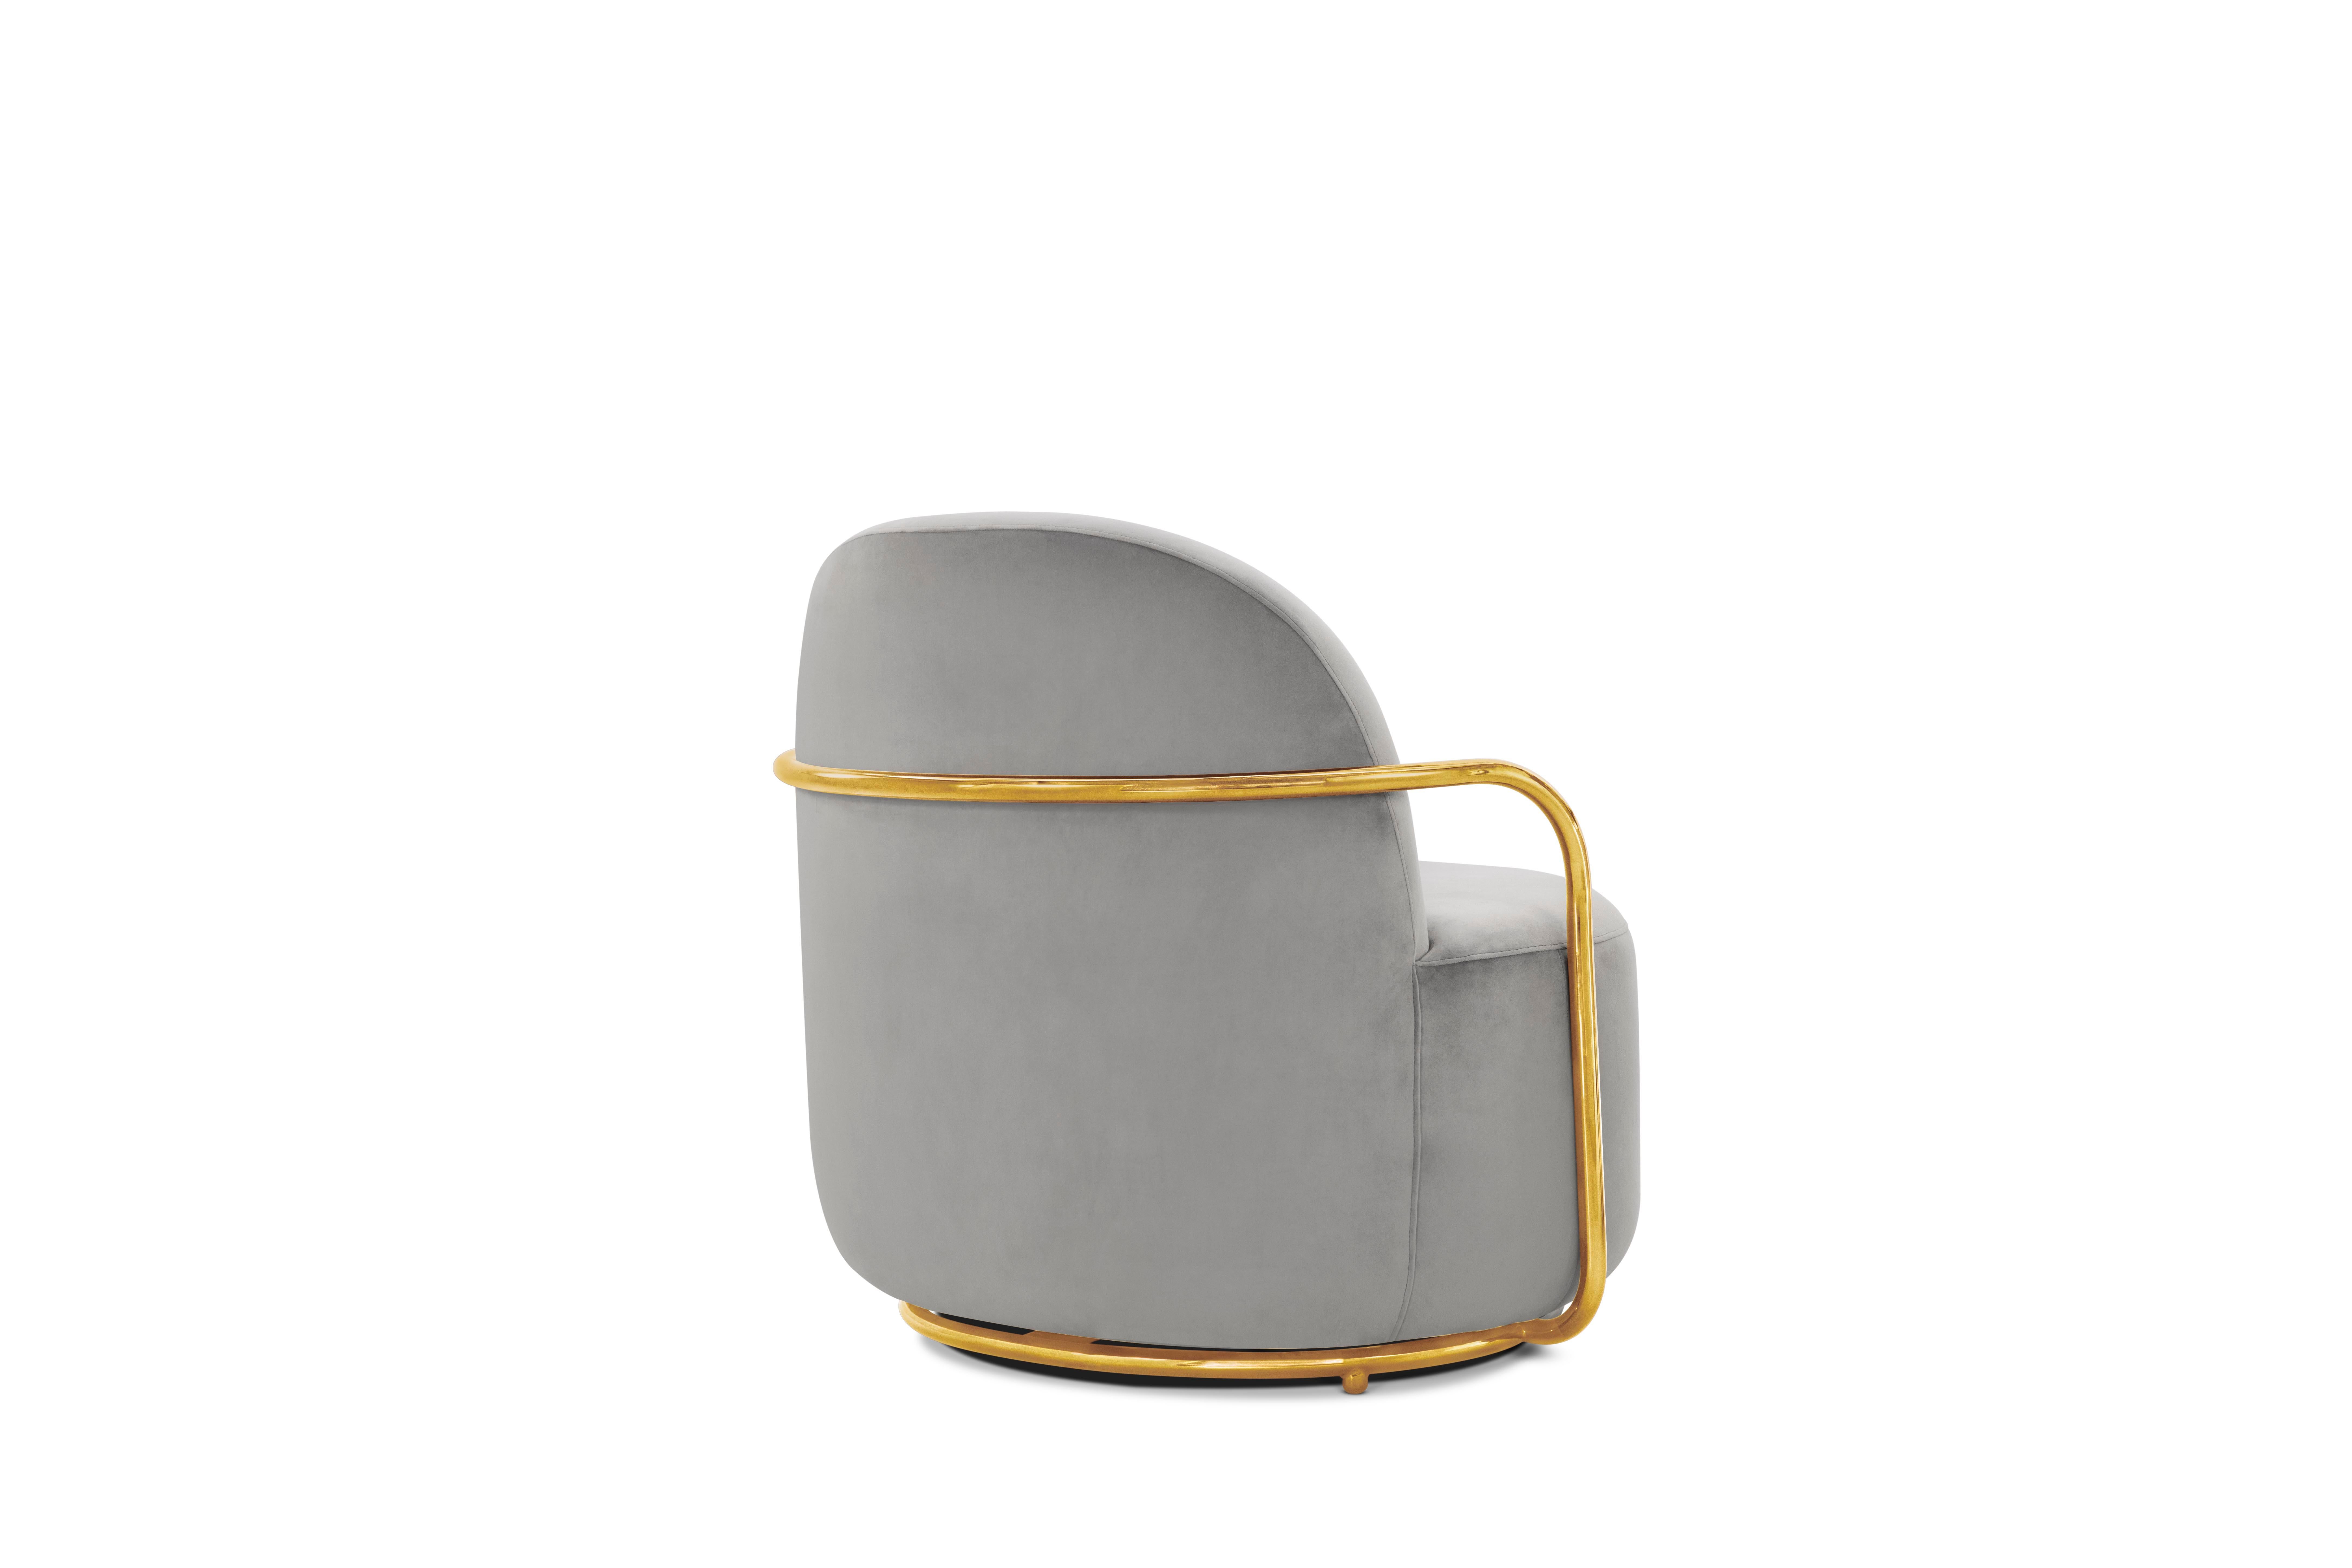 Der Orion Lounge Chair mit plüschgrauem Samt und goldenen Armlehnen von Nika Zupanc ist ein zeitloser Sessel mit hellgrauem Samt und goldfarbenen Metallarmen.

Nika Zupanc, eine auffallend renommierte slowenische Designerin, scheut sich nicht, den